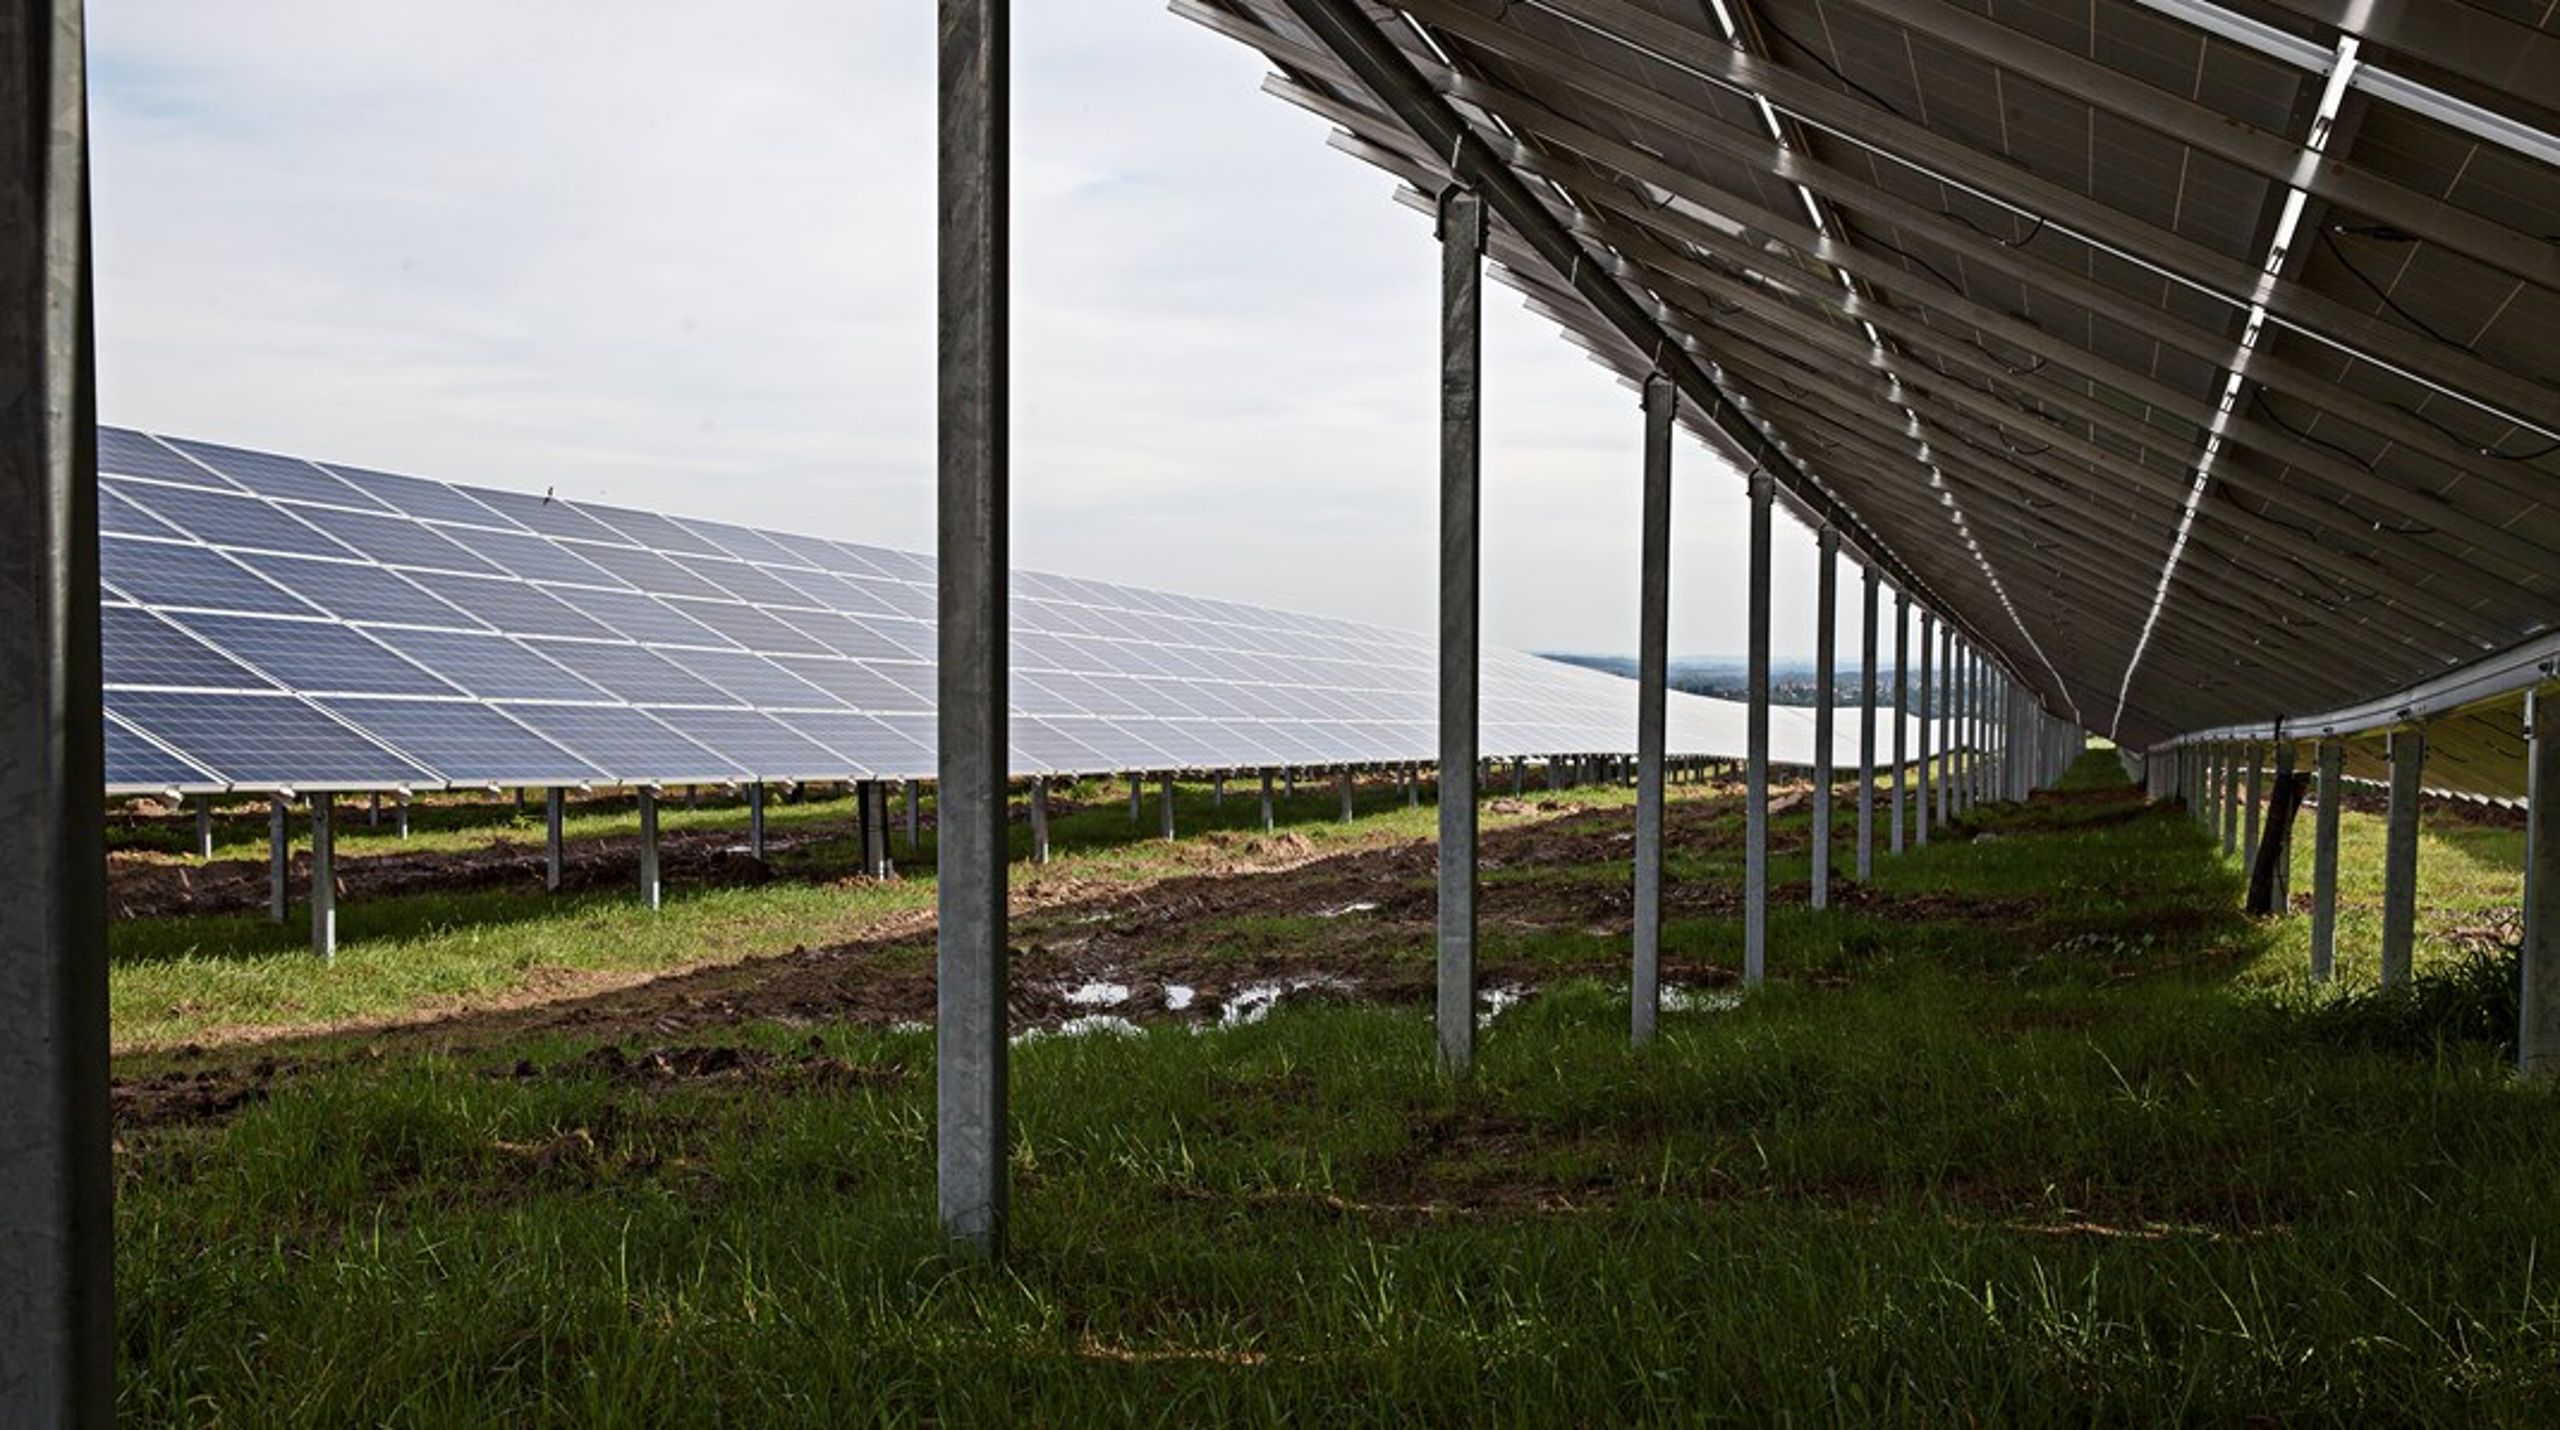 Energilandskaber i form af solcellemarker bliver
i de kommende år en stigende del af den grønne omstilling: Derfor er det
vigtigt, at vi på samfundsniveau får størst udbytte af investeringerne, skriver de fire forfattere bag debatindlægget.&nbsp;